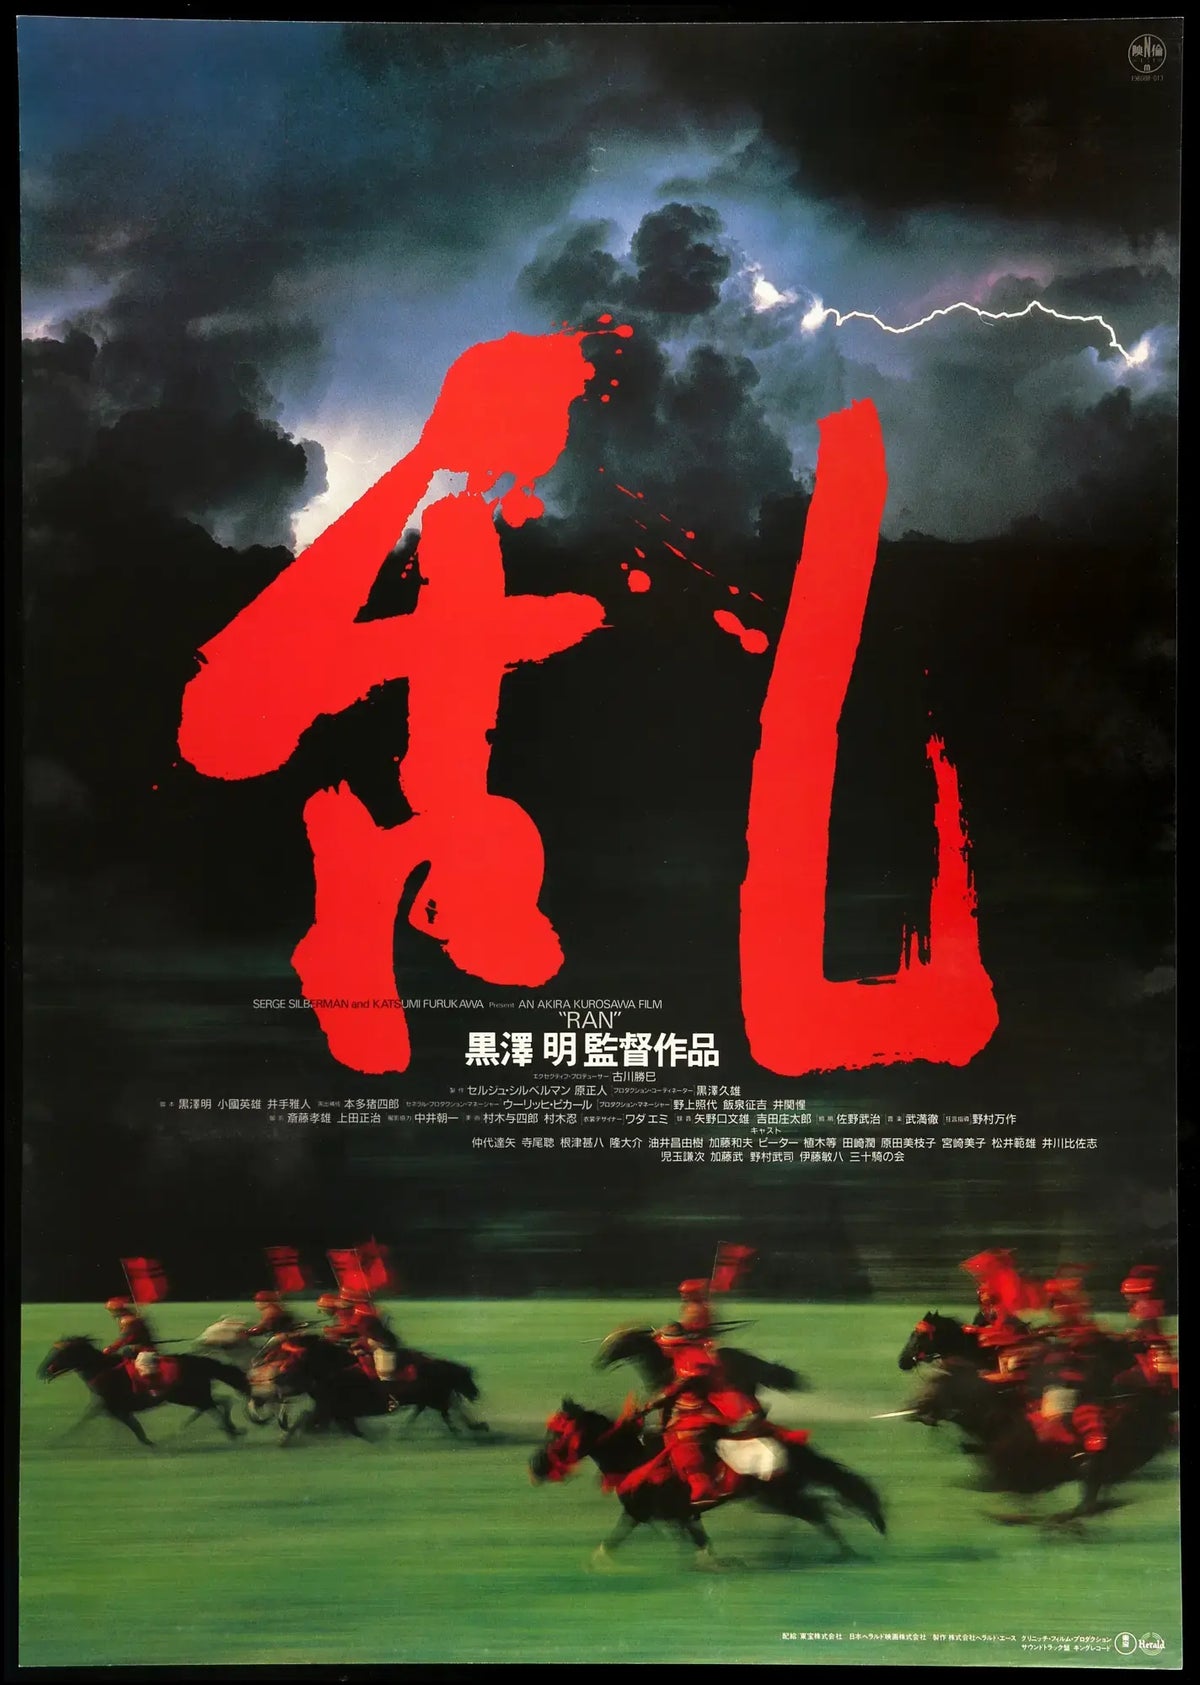 Ran (1985) original movie poster for sale at Original Film Art